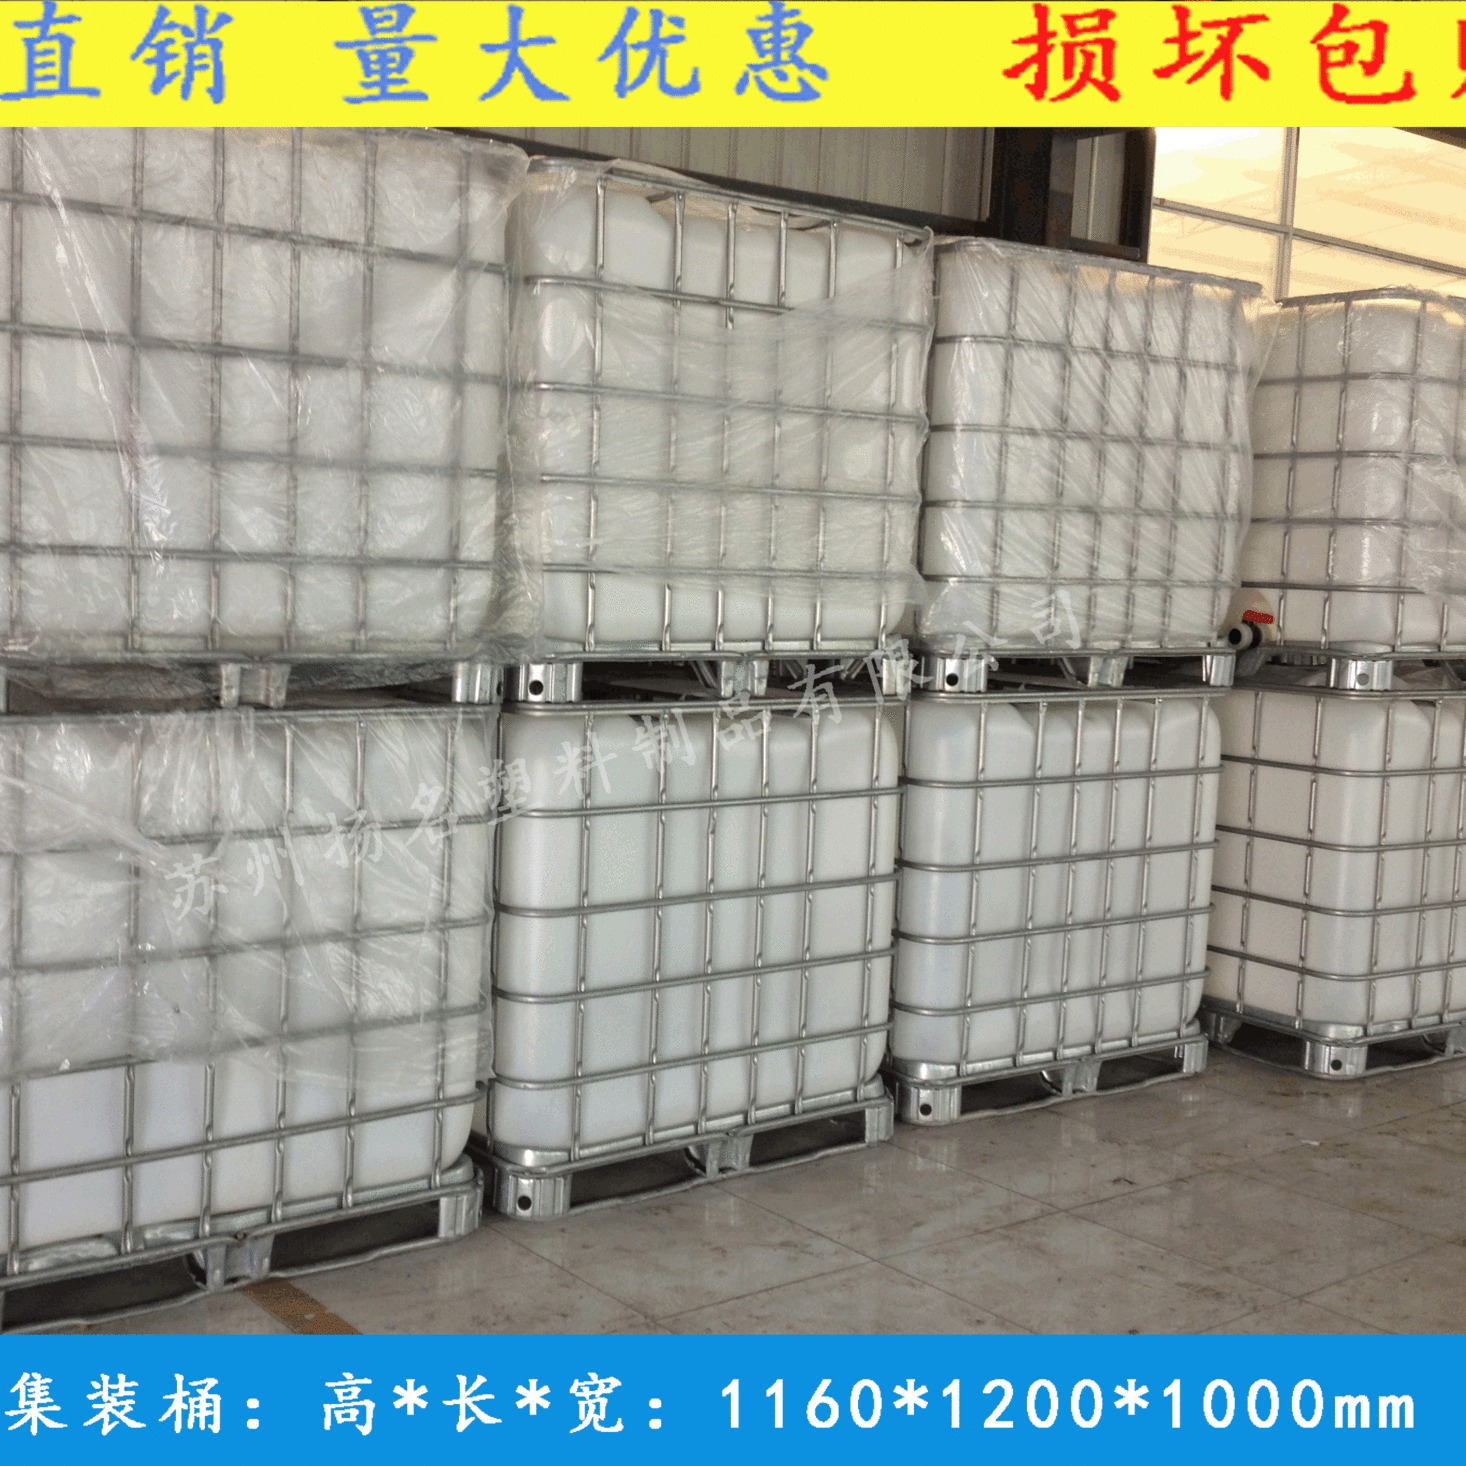 扬名塑料铁架桶 张家港吨桶生产厂家 IBC塑料桶 1吨化工运输专用桶